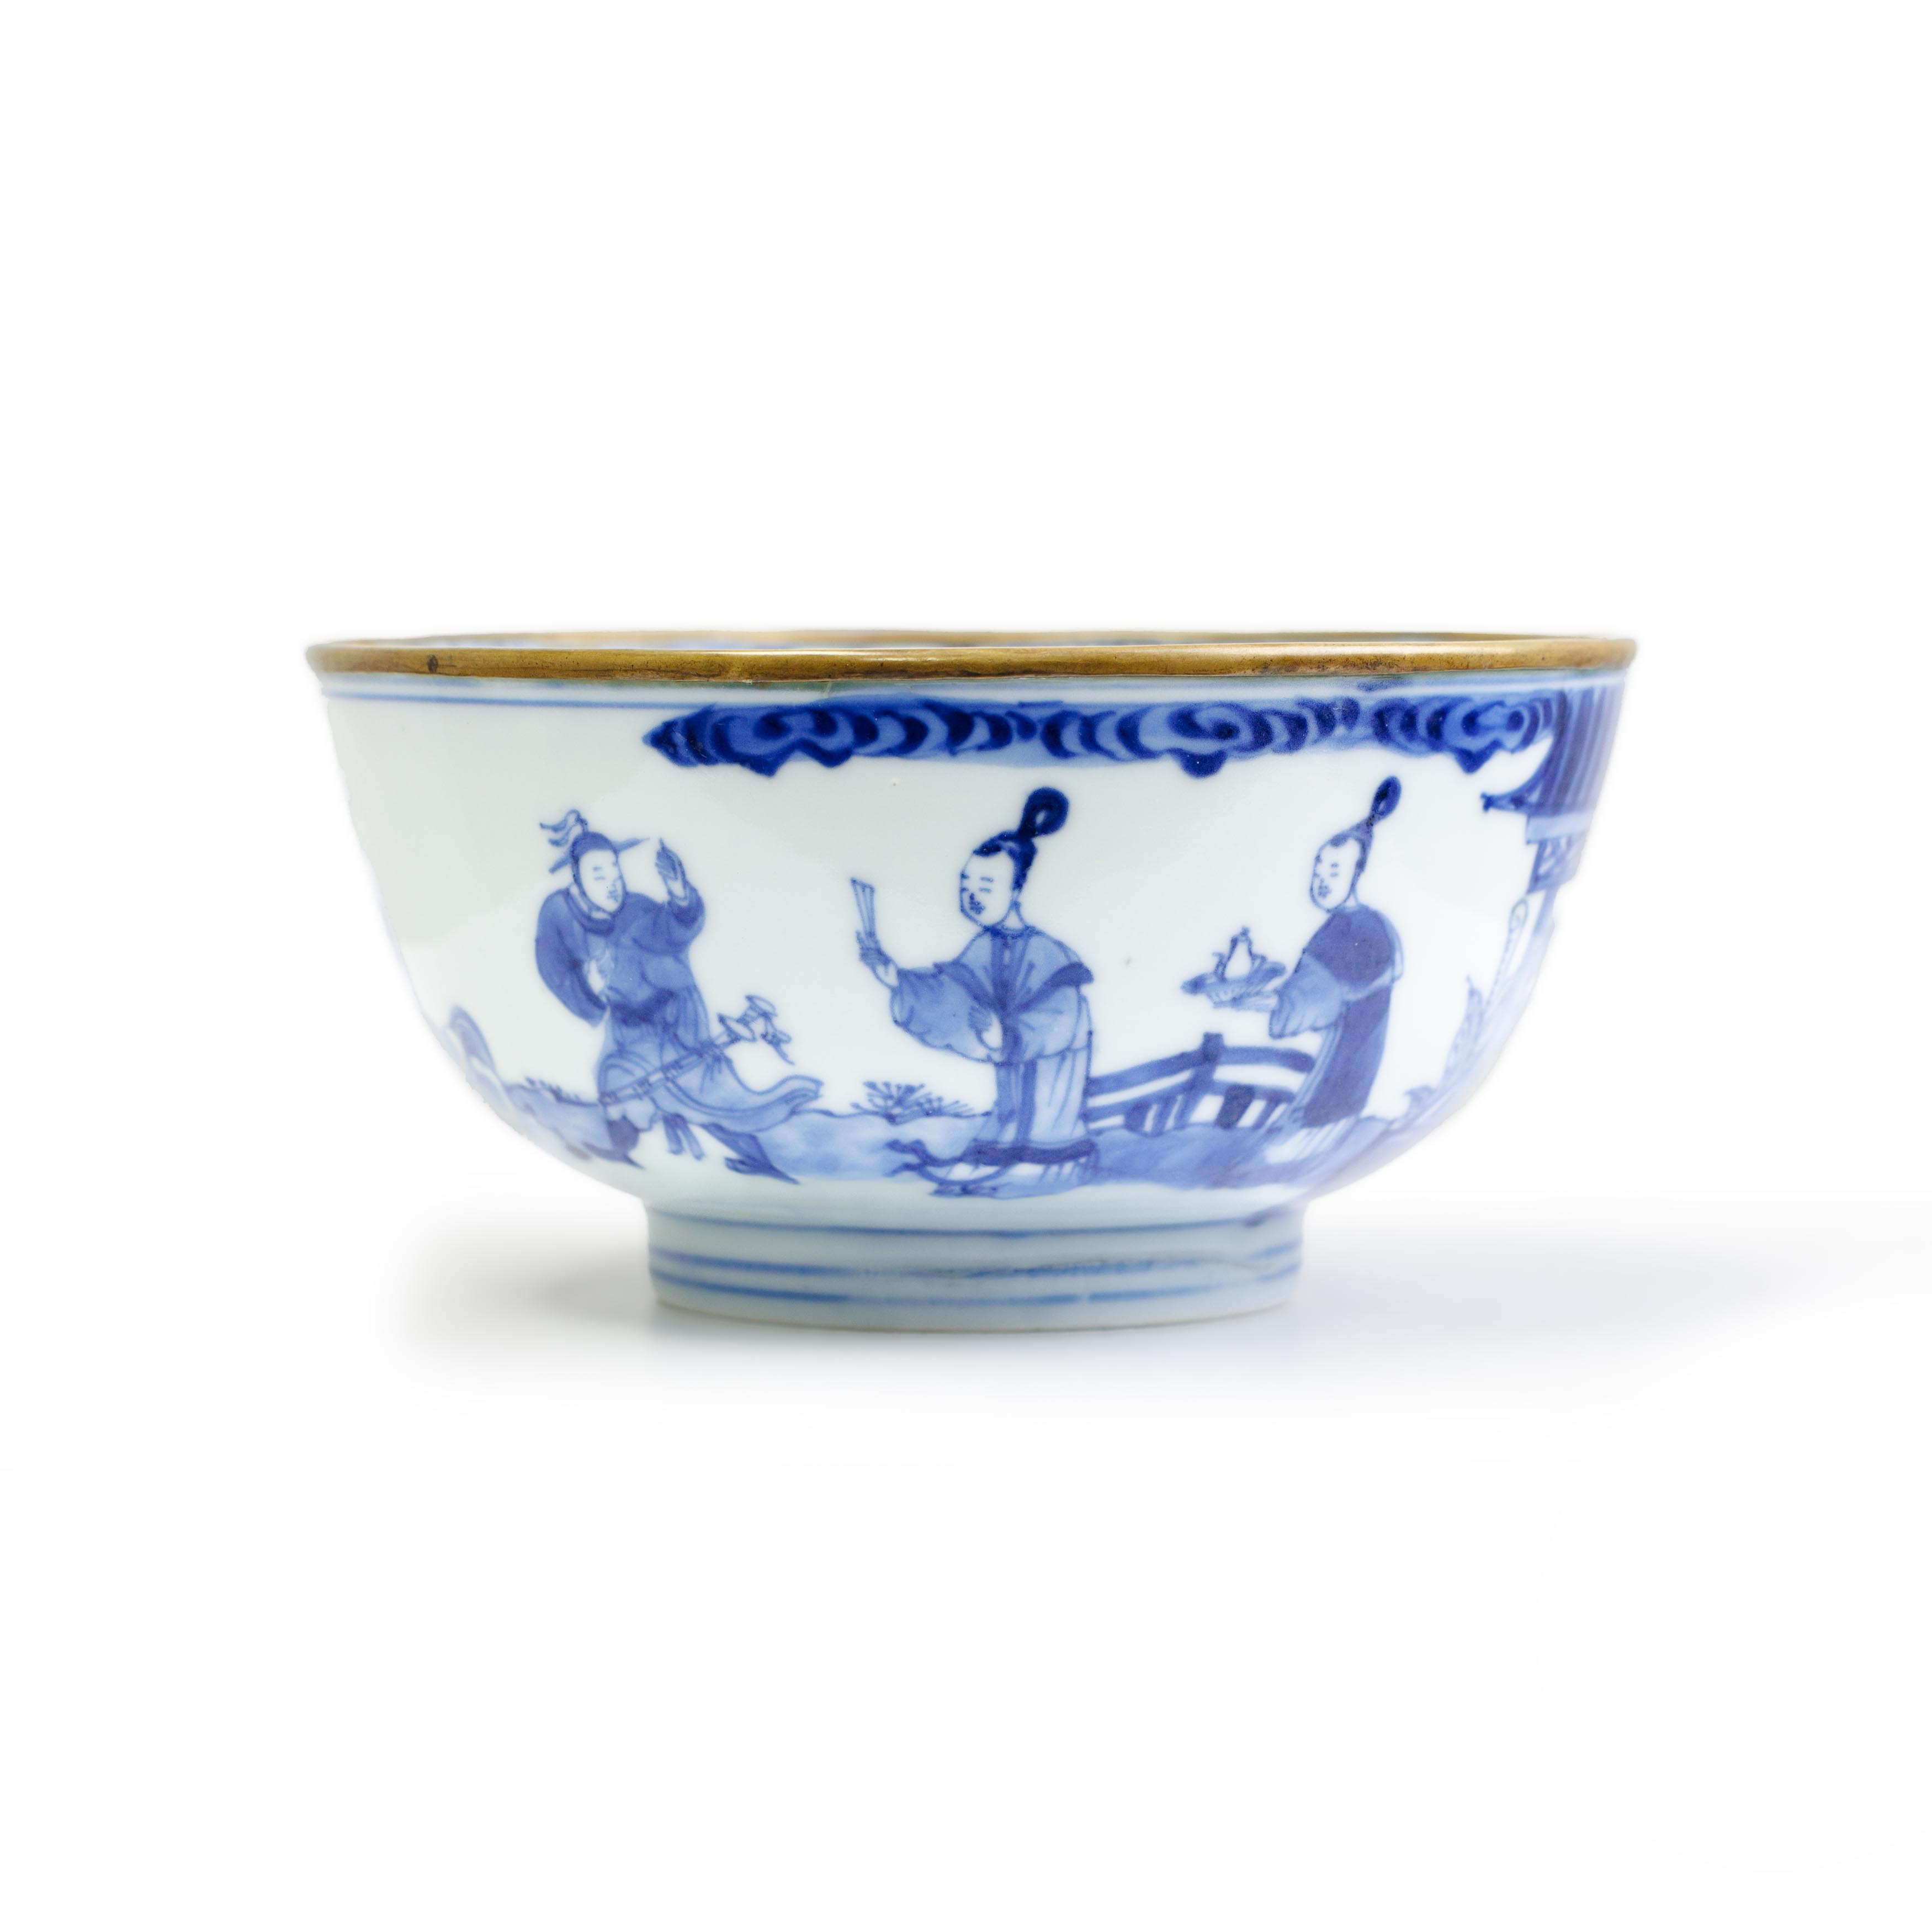 A Chinese blue and white 'Xi xiang ji' bowl Qing dynasty, Kangxi period, ruo shen zhen cang seal...